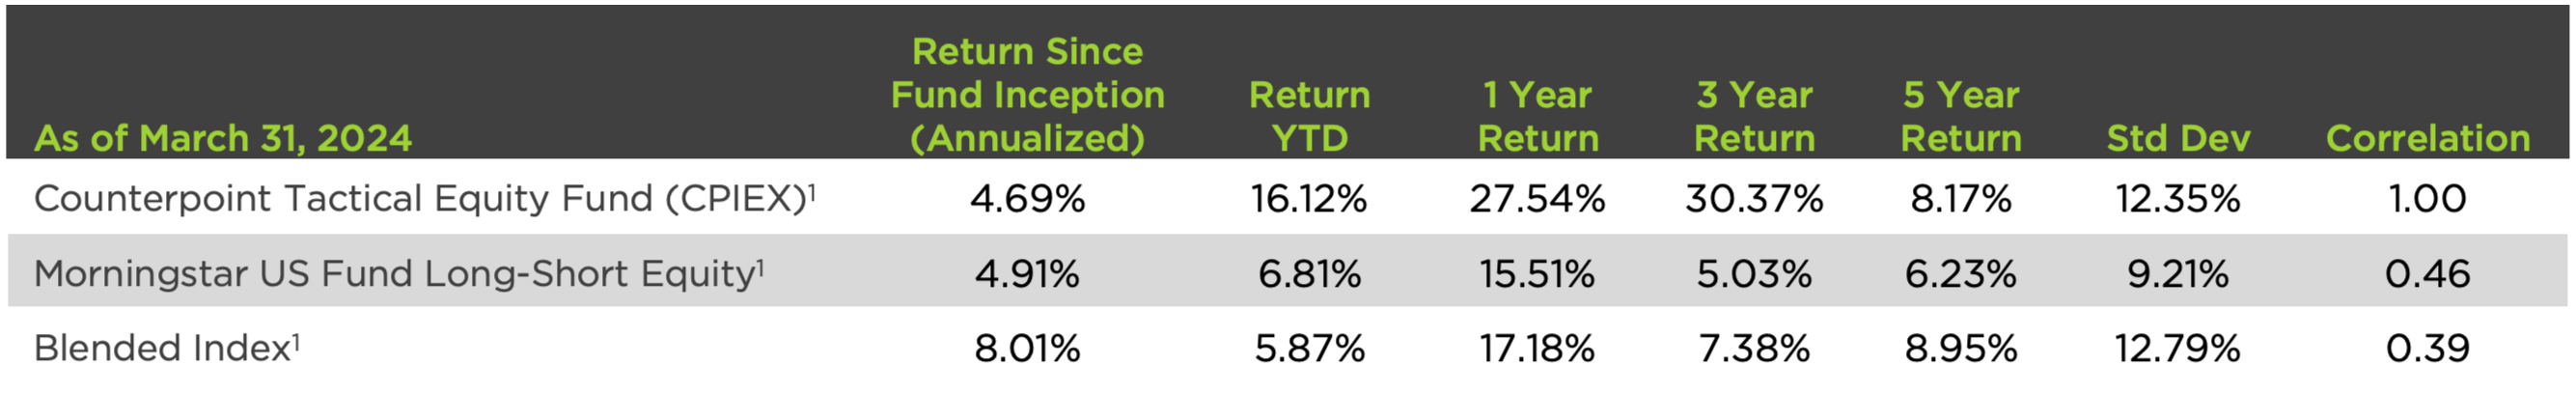 CPIEX v Morningstar v Index Performance Table as of Mar. 31, 2024